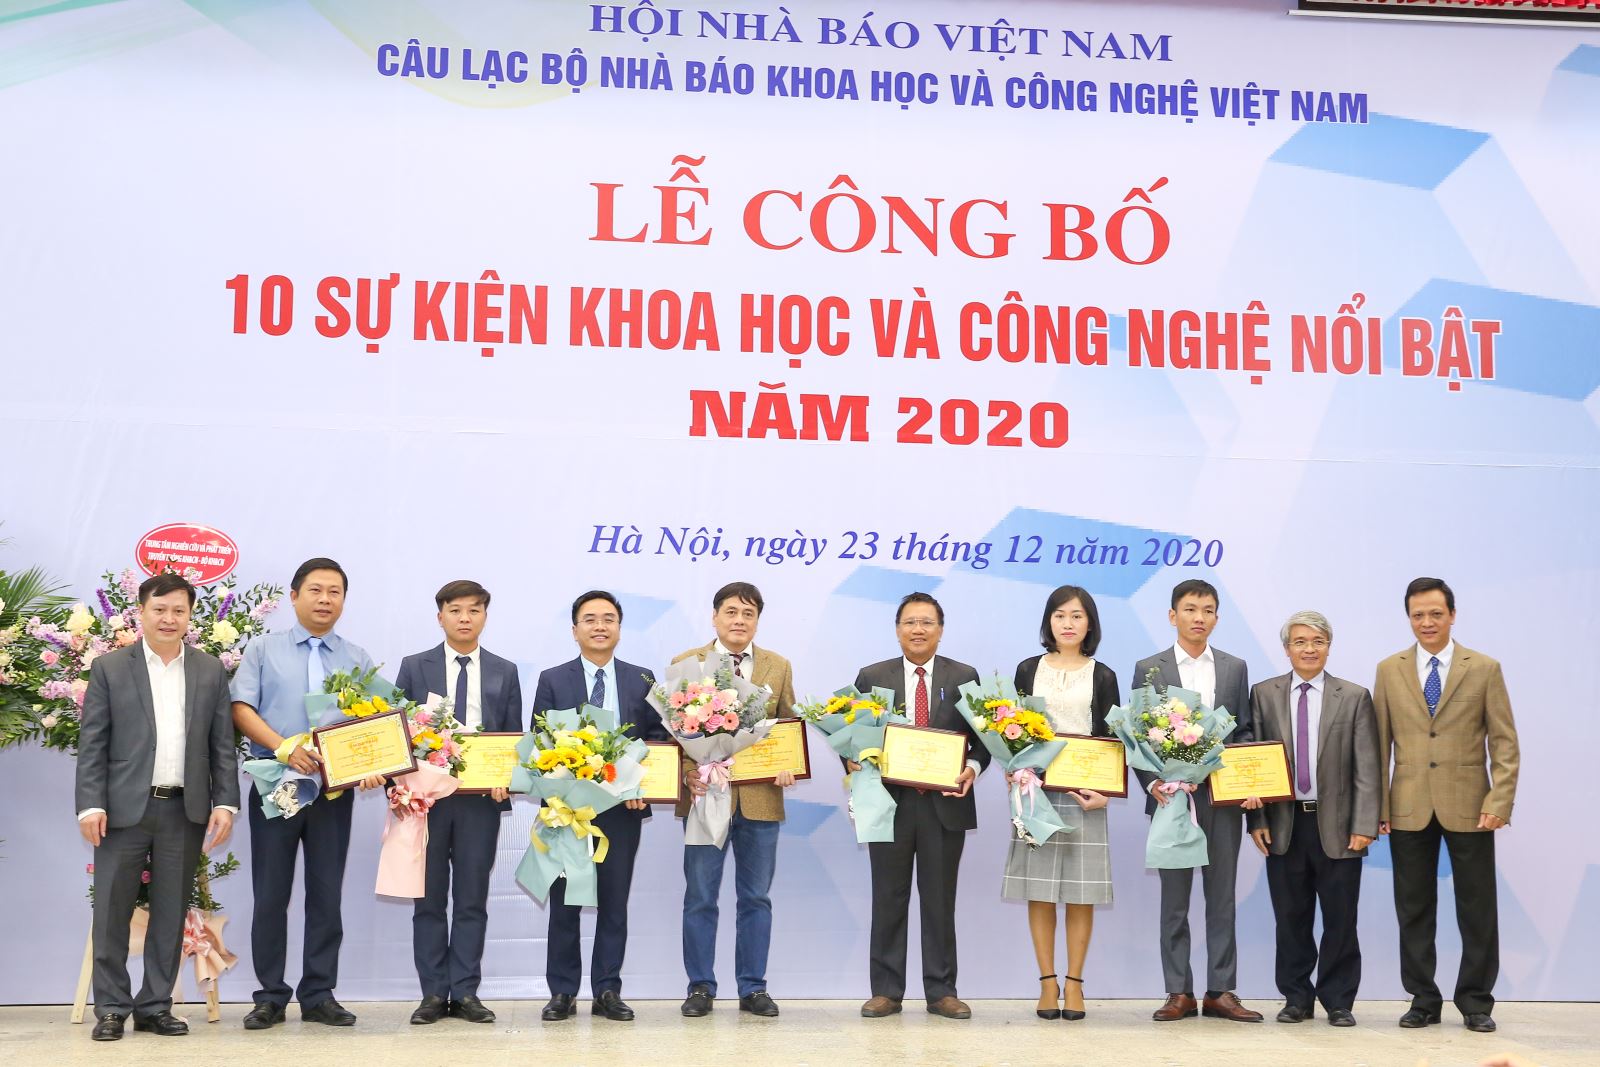 10 sự kiện khoa học và công nghệ Việt Nam nổi bật năm 2020